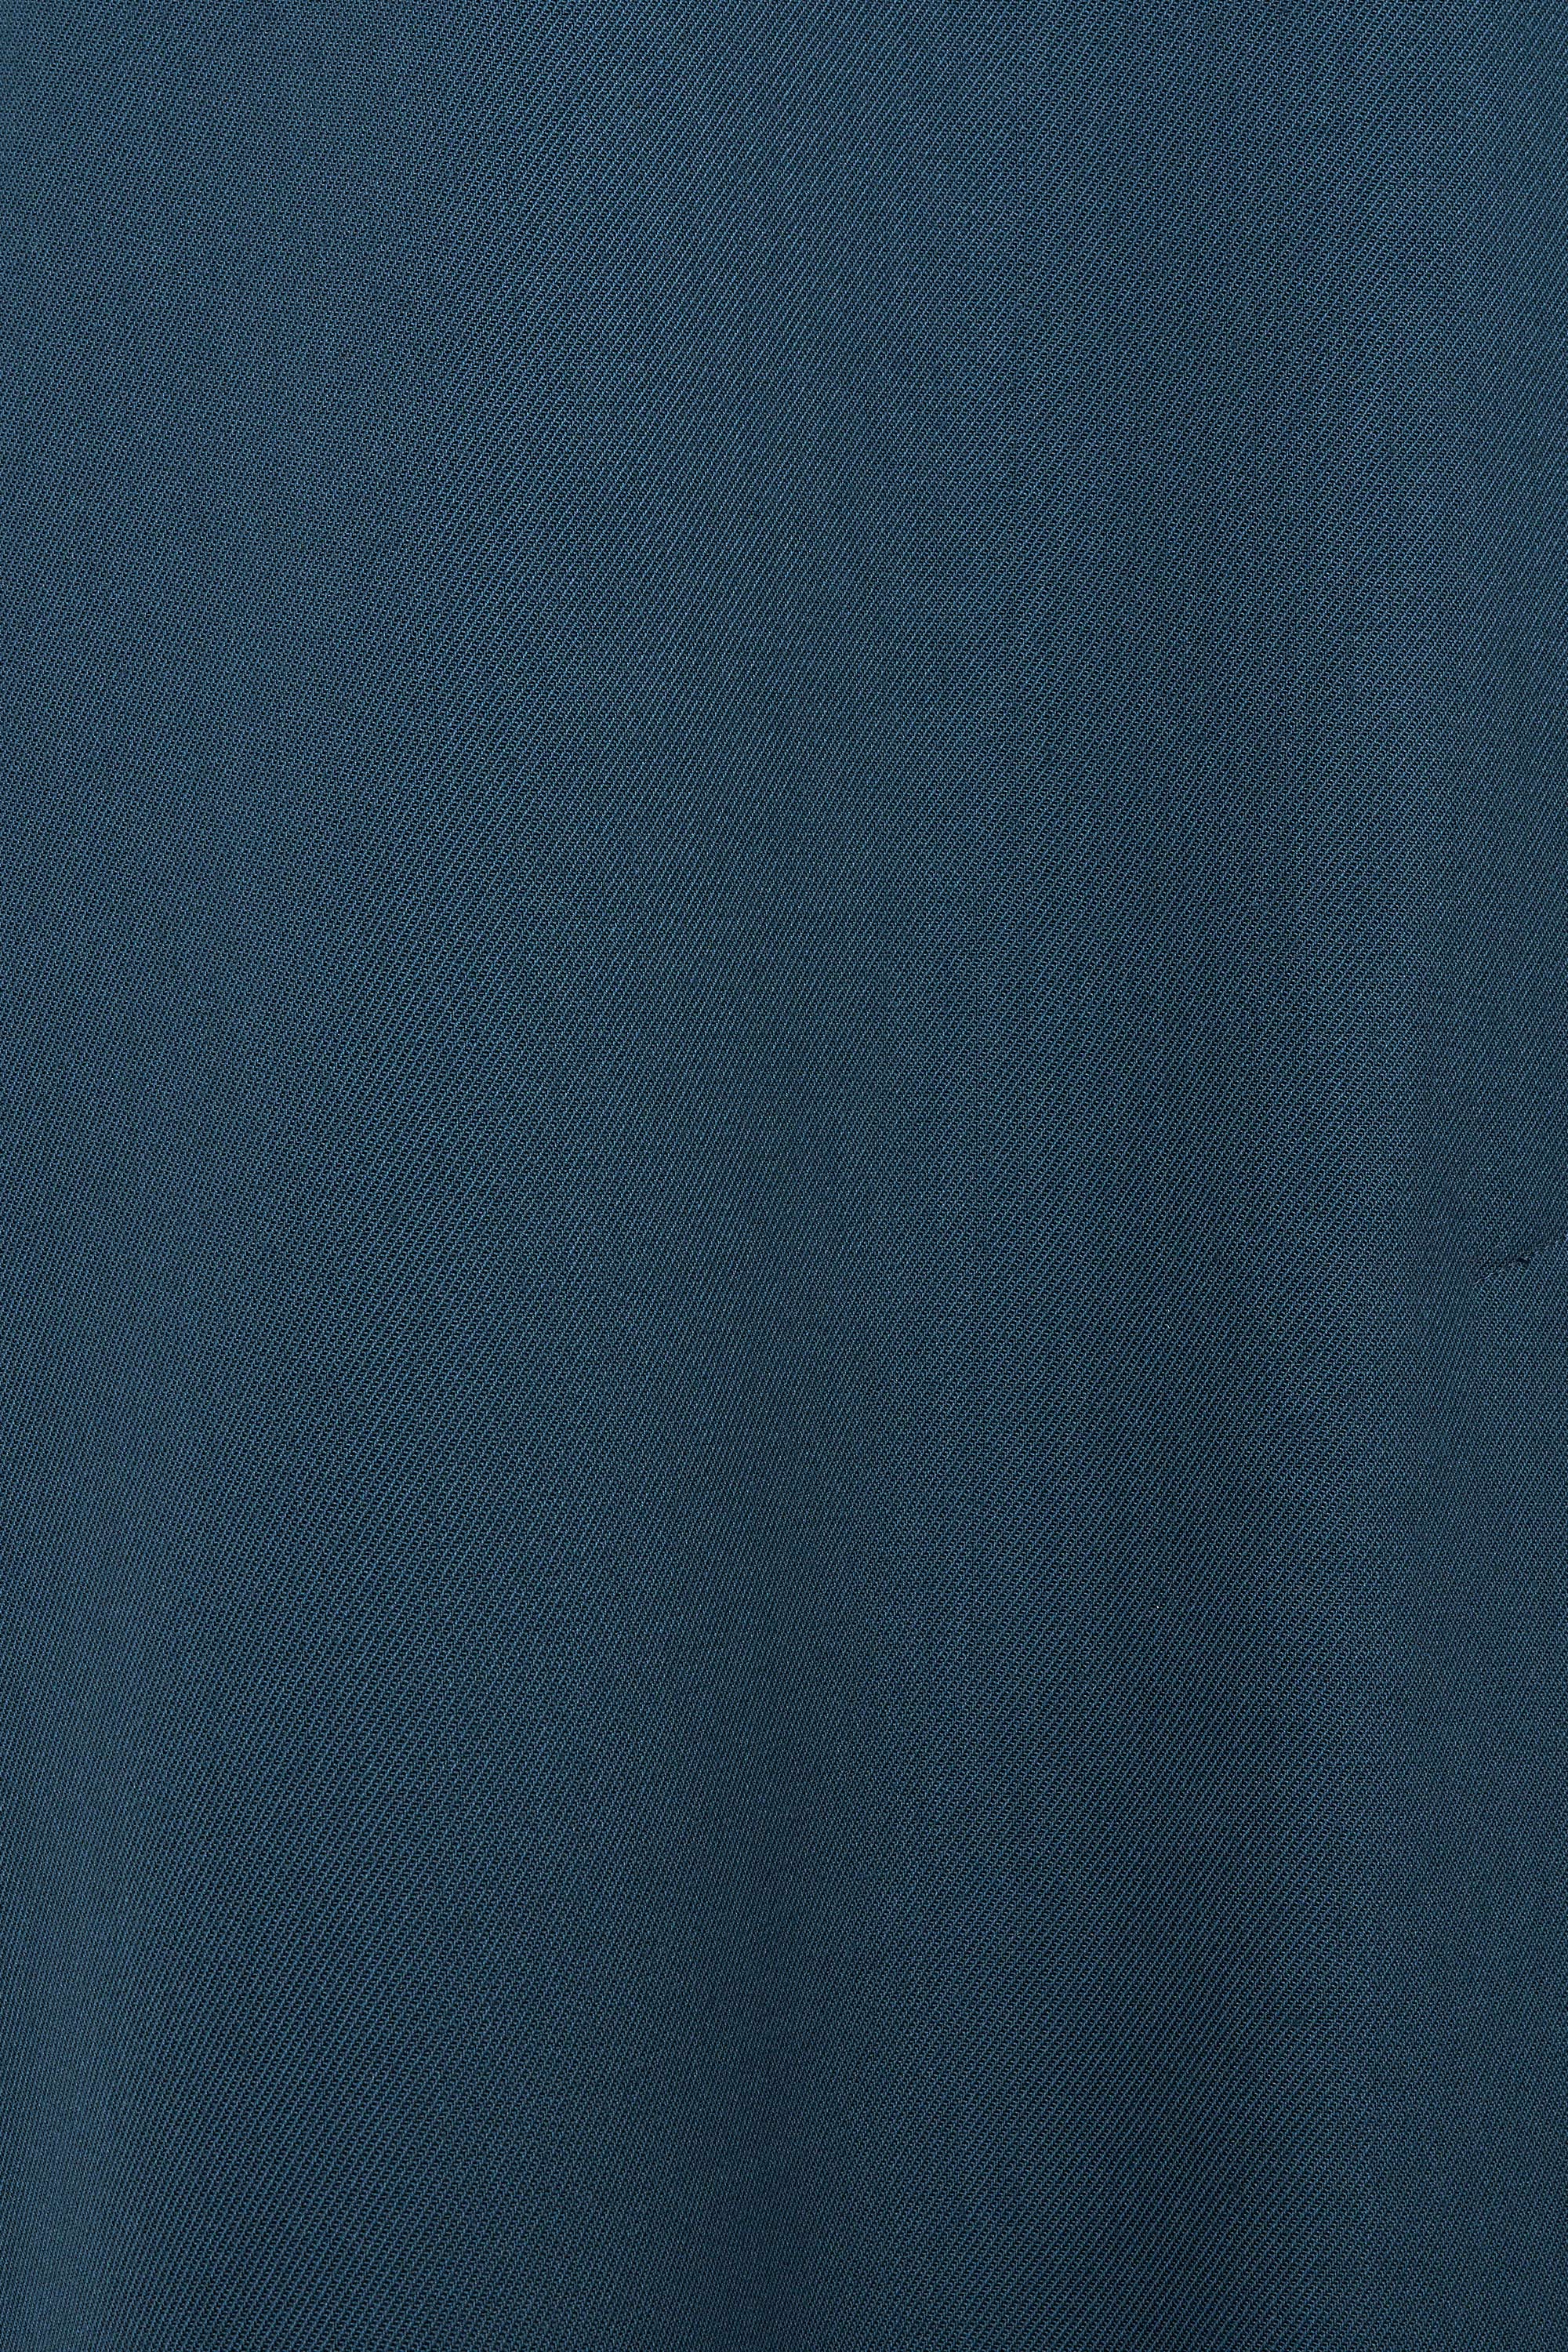 3/60オーガニックウールサバイバルクロス / ビックマックコート, Dark Turquoise